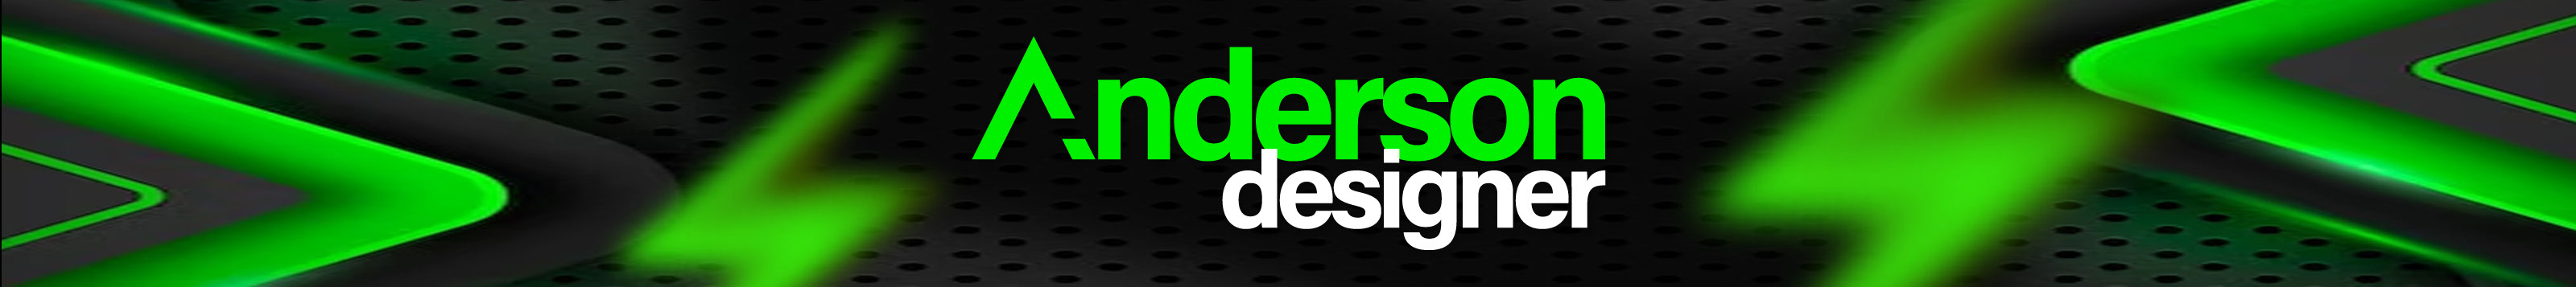 Anderson Designer's profile banner